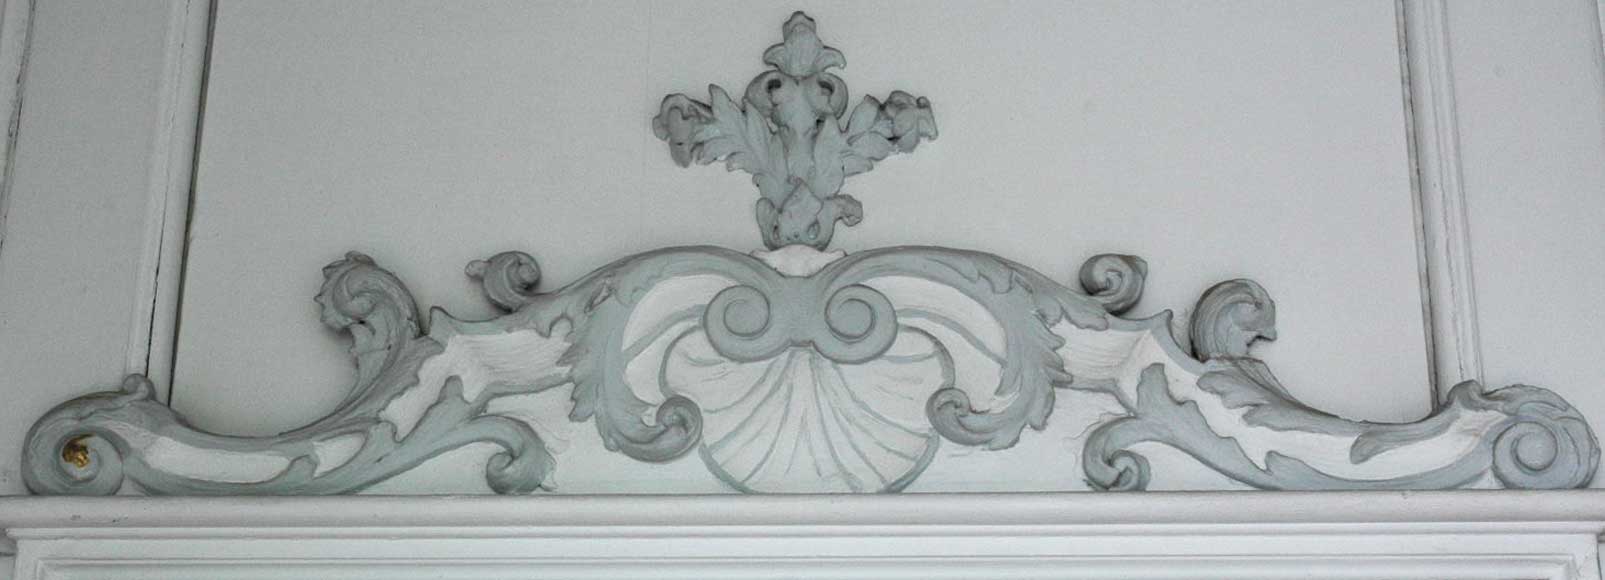 18世纪装饰护墙板及其原配木地板-1